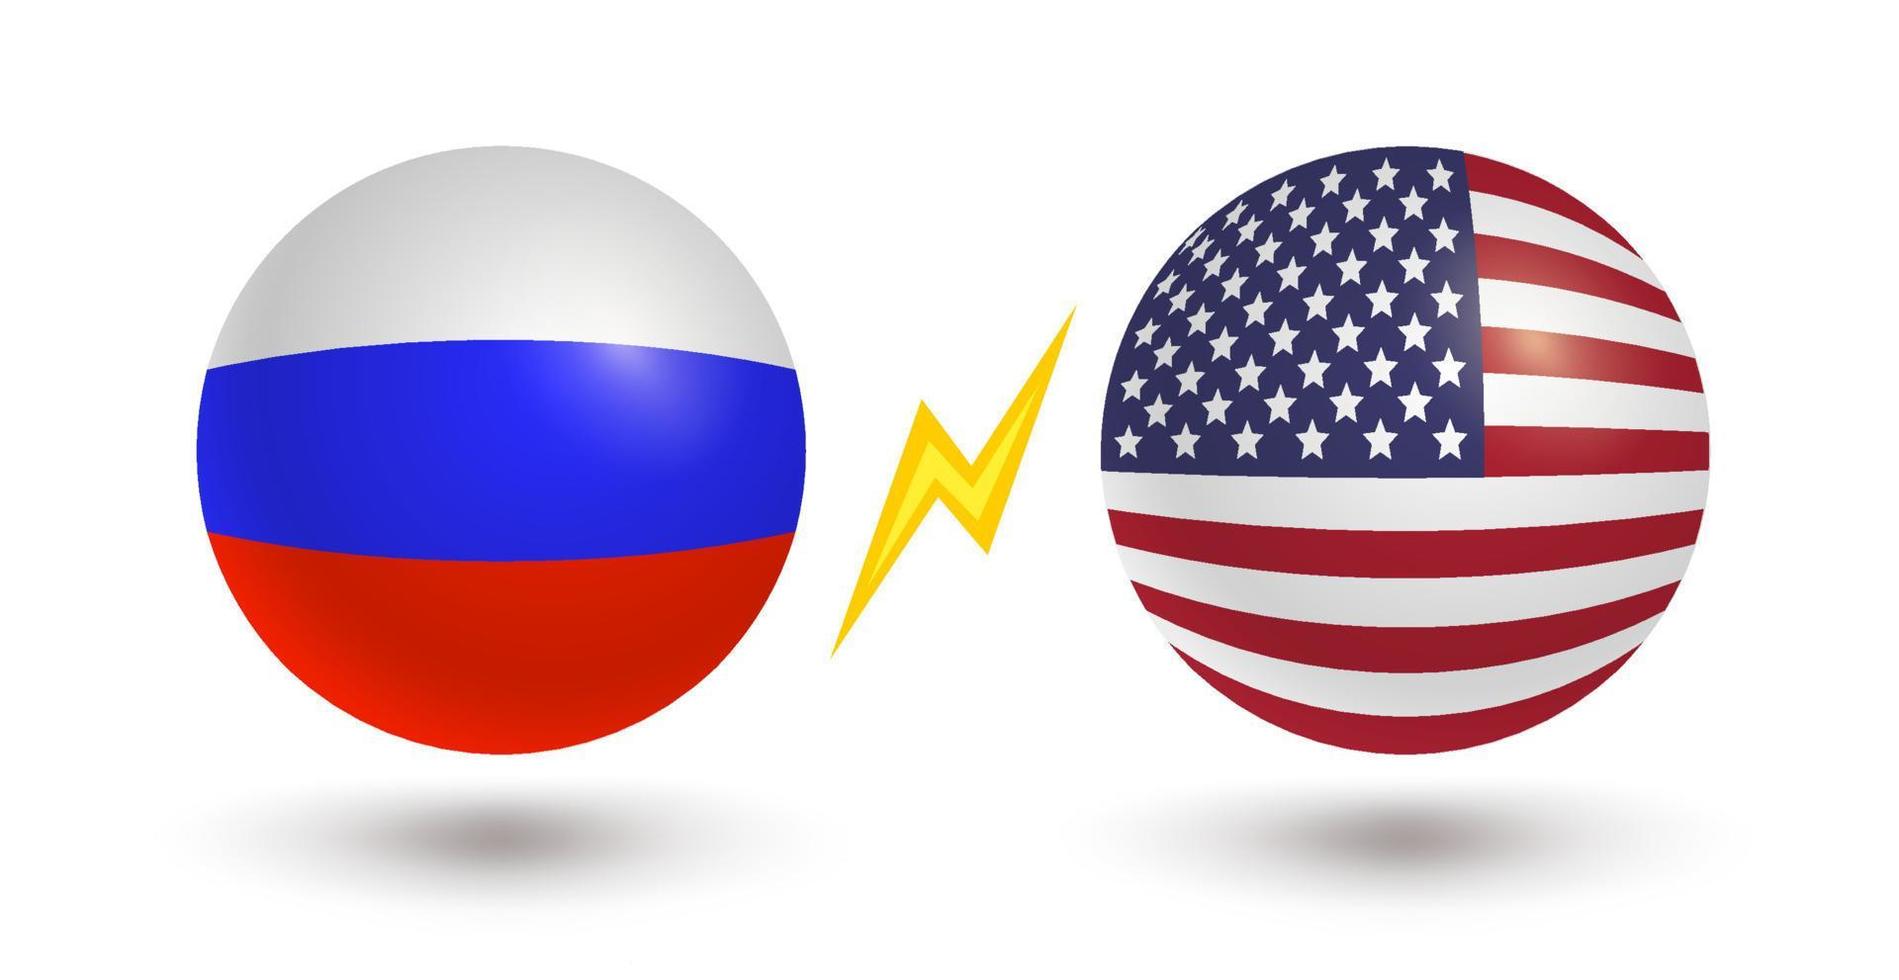 vektor uppsättning av två ikoner av ryska flagga och flagga av usa.